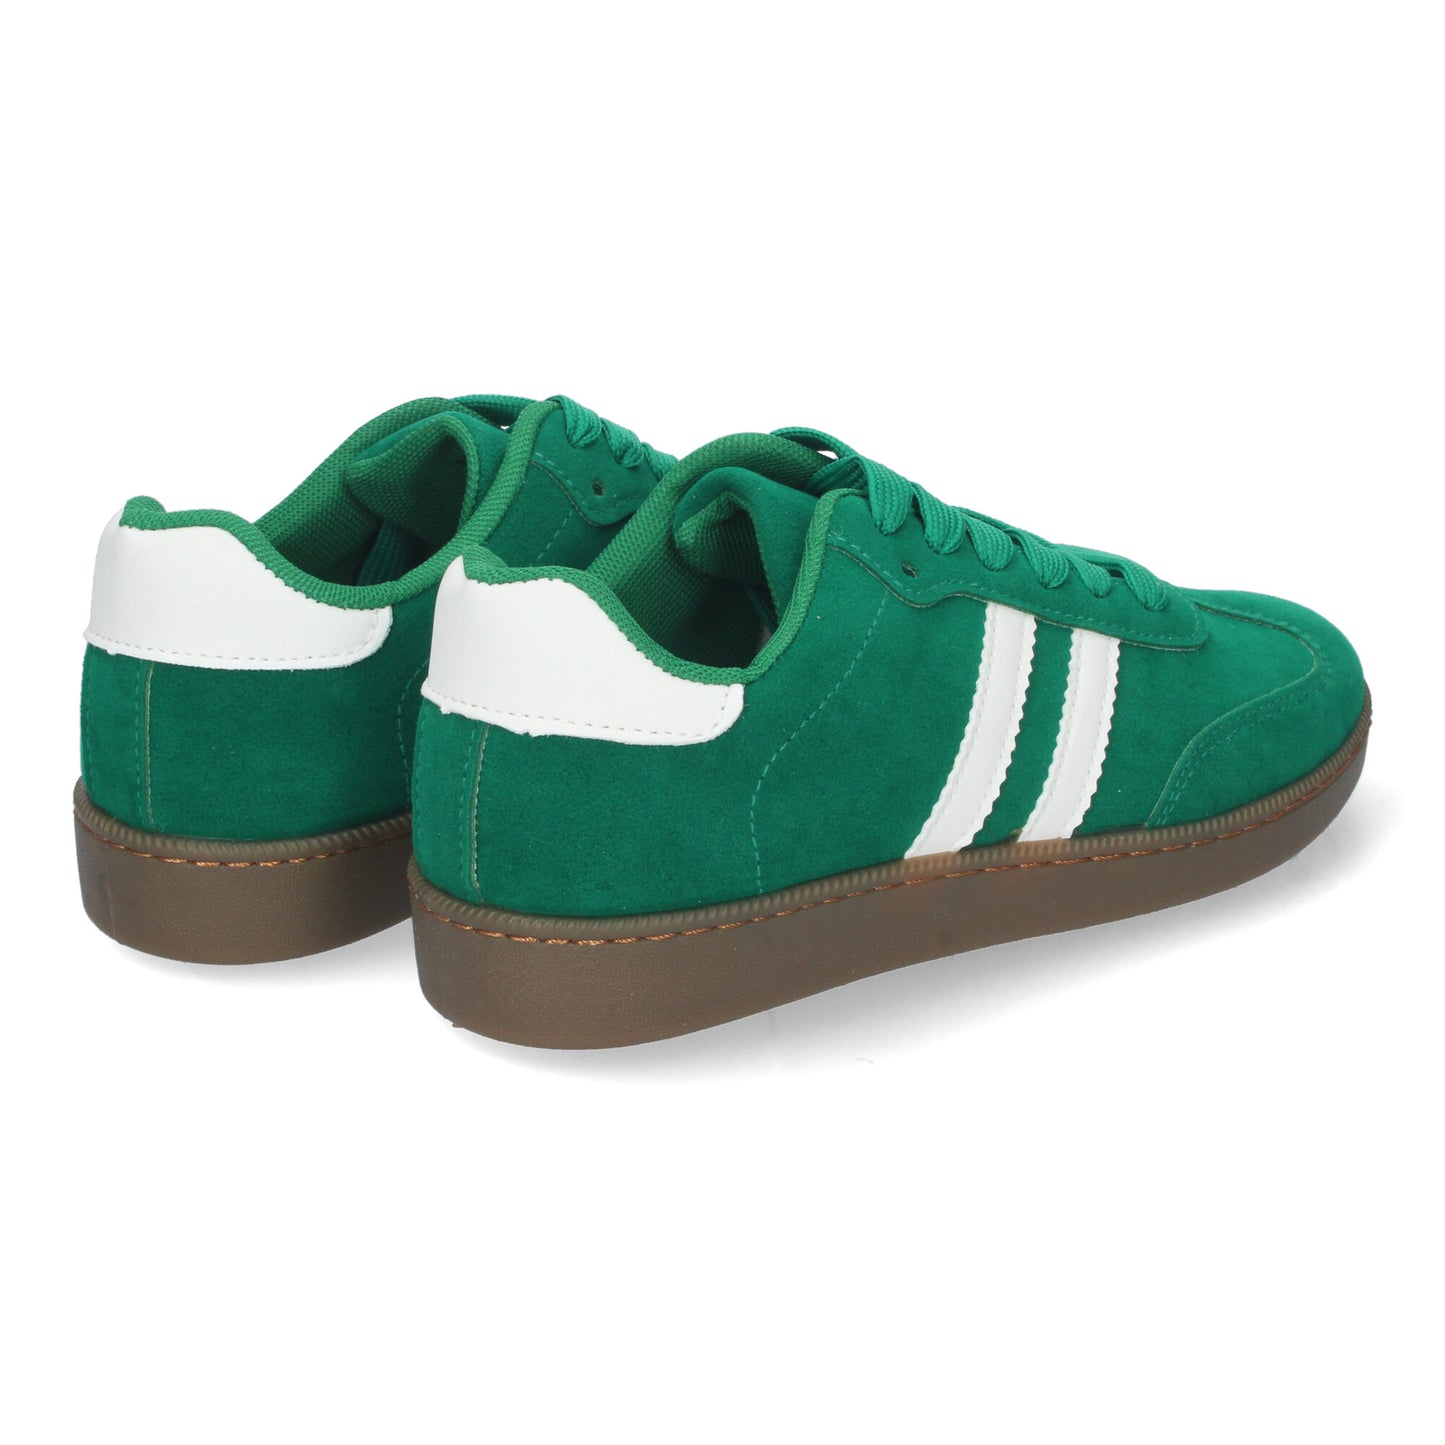 Zapatillas planas deportivas verdes.